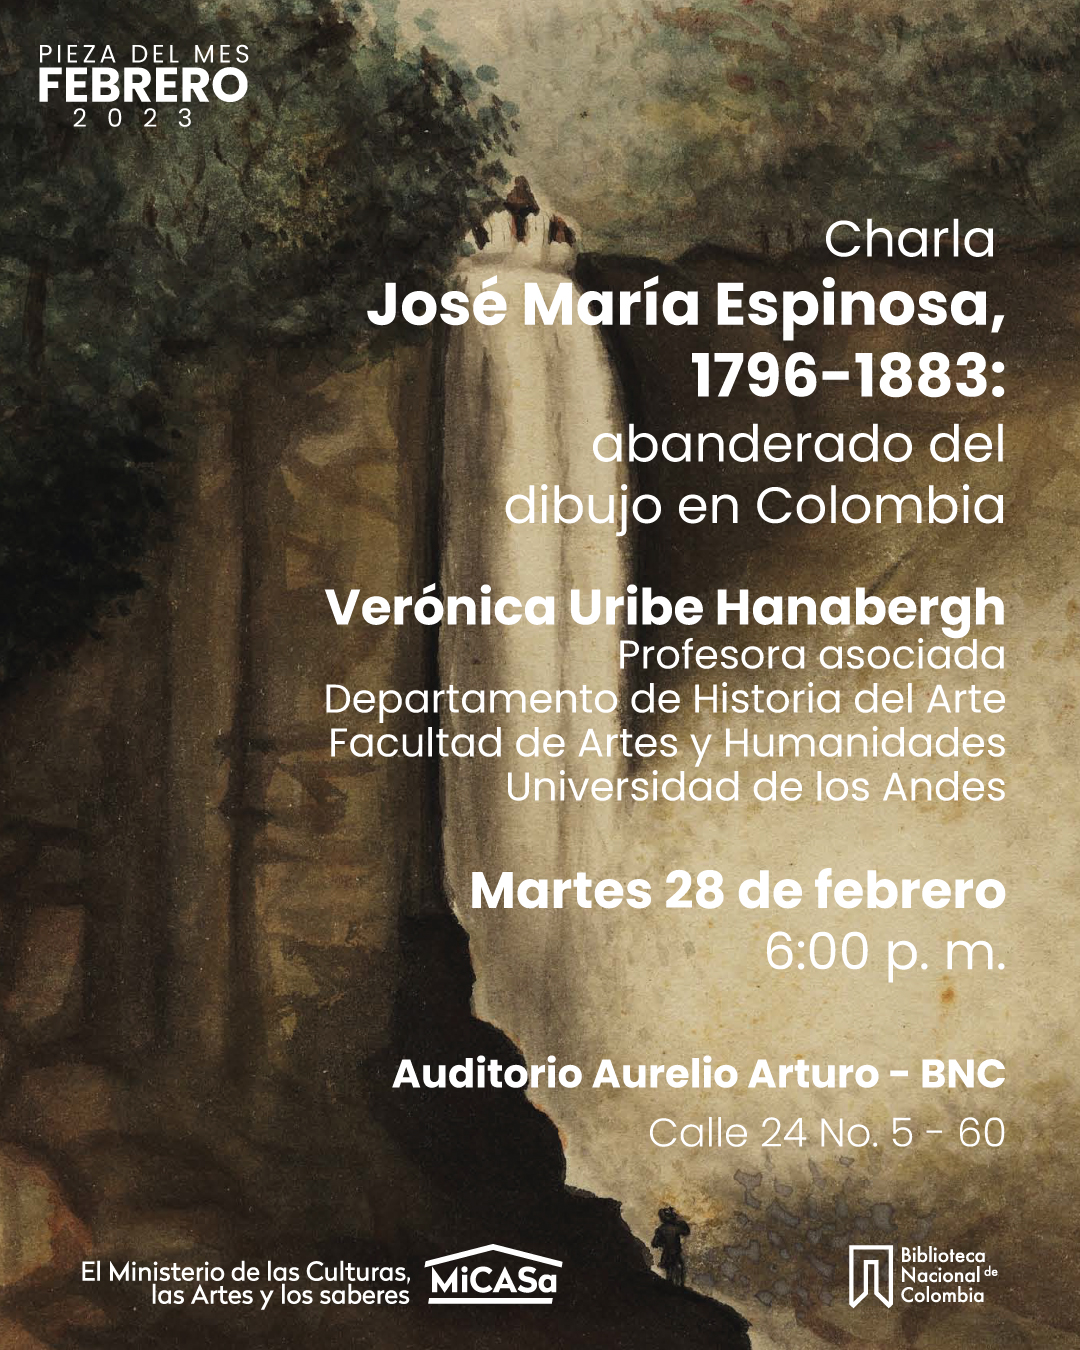 Charla: José María Espinosa 1796-1883: abanderado del dibujo en Colombia, con Verónica Uribe, profesora de Historia del Arte, Universidad de los Andes